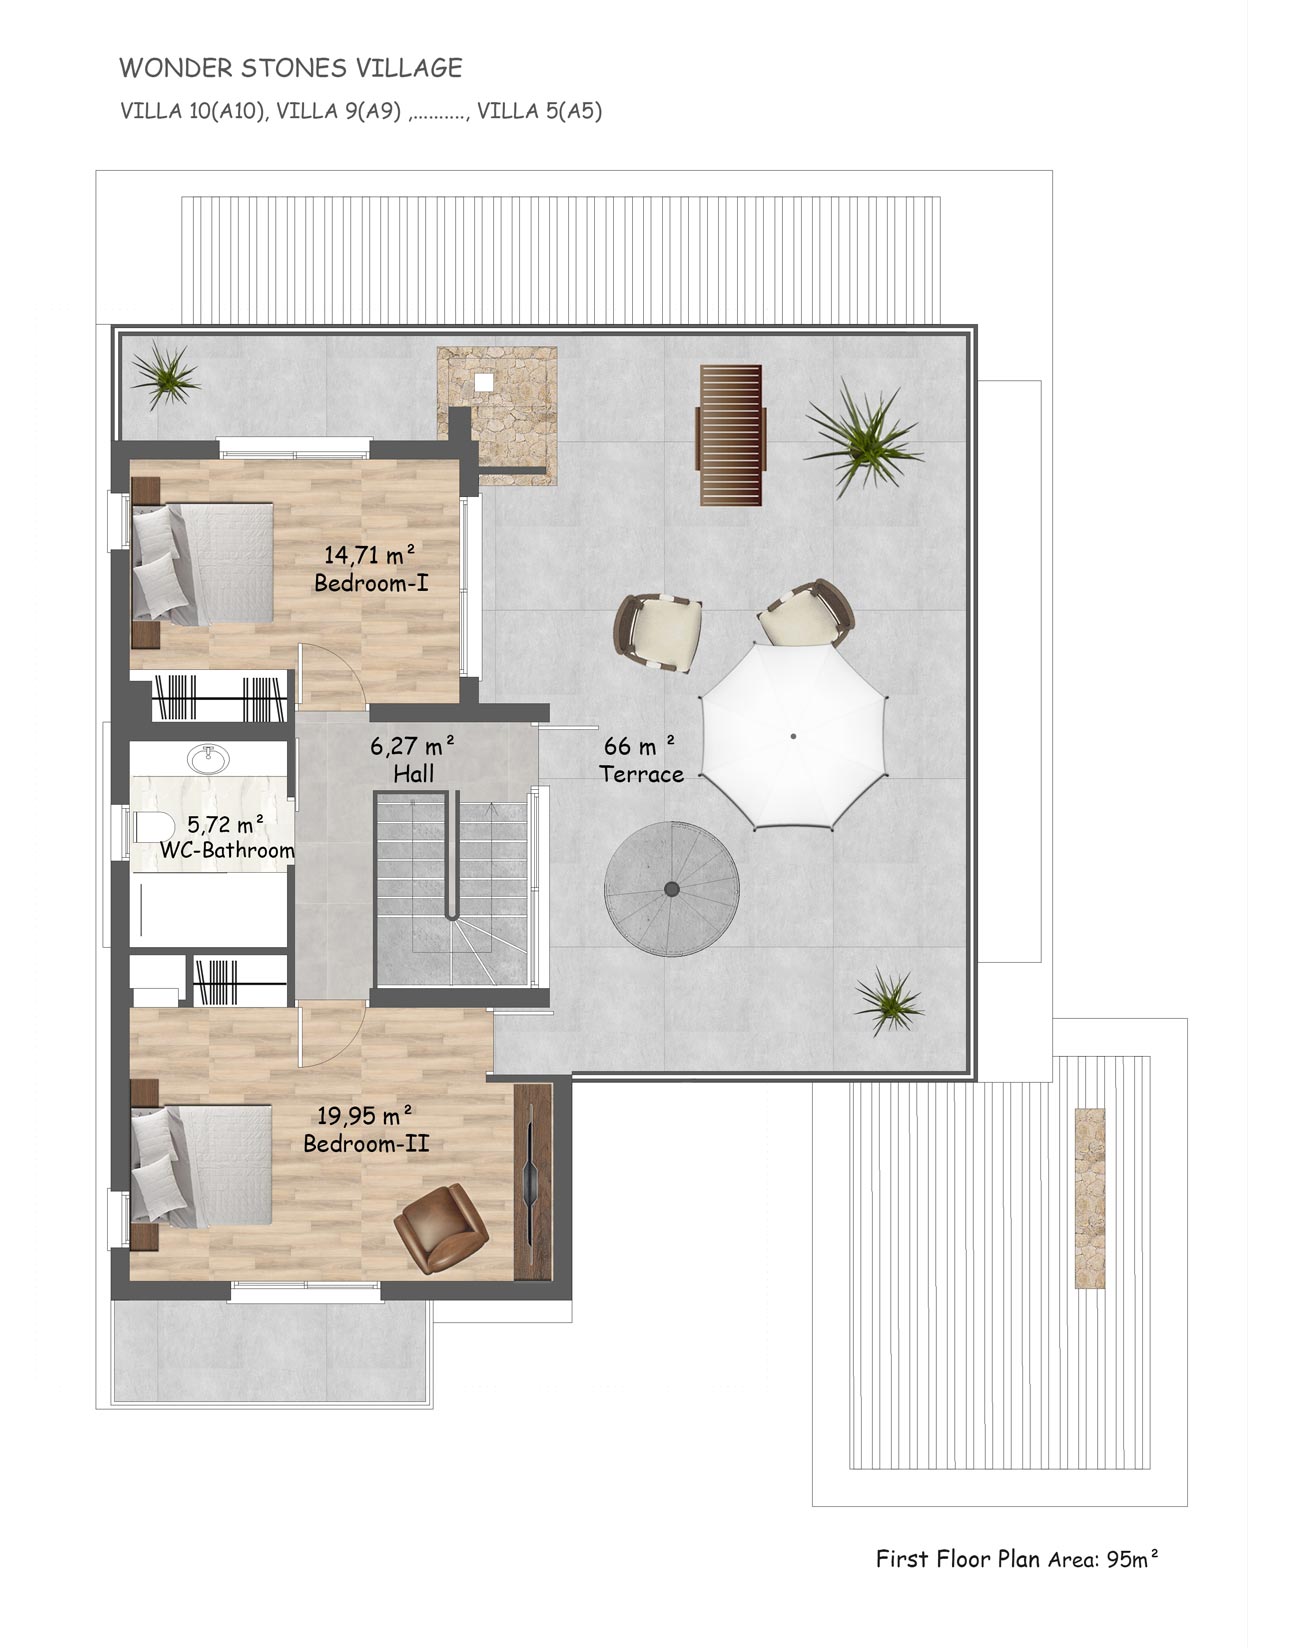 Floor Plan - 4 bedroom villa (5-10) / First floor